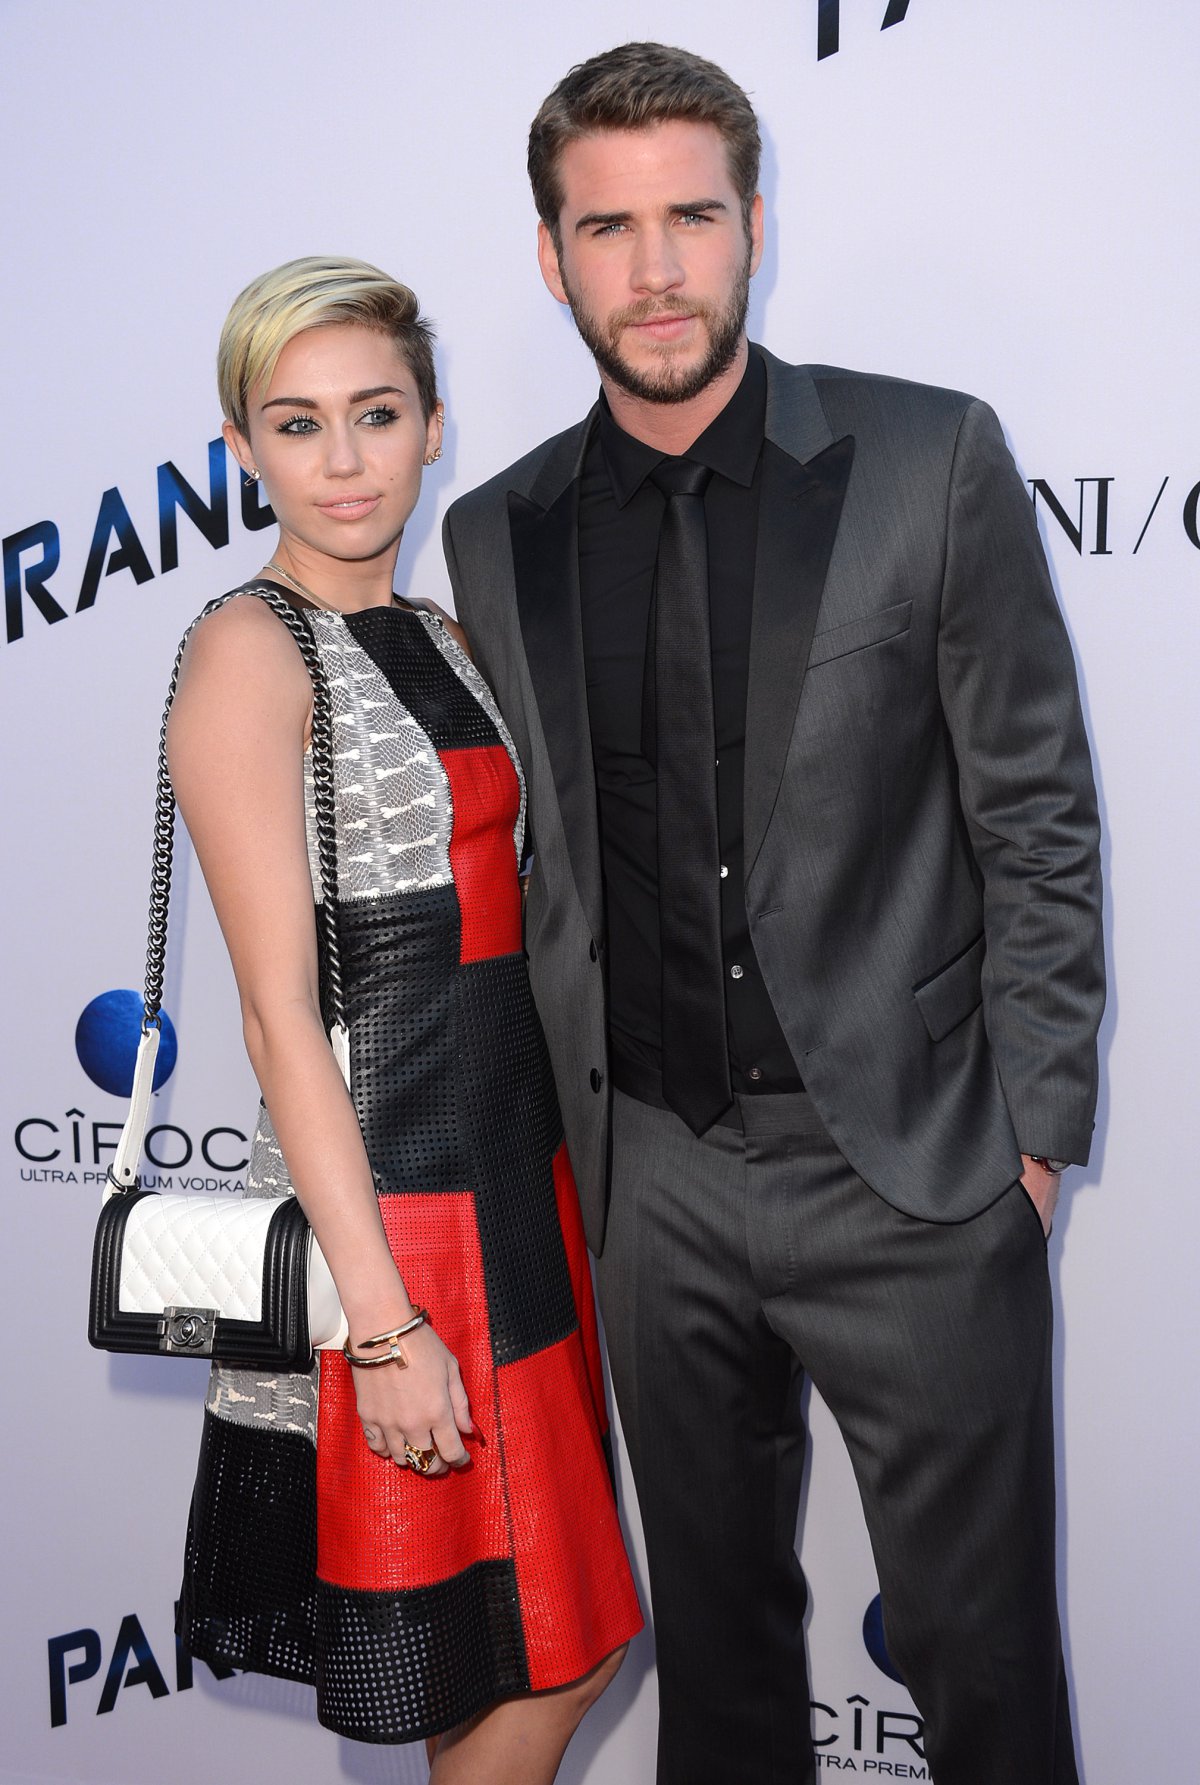 La reconciliación entre Miley Cyrus y Liam Hemsworth